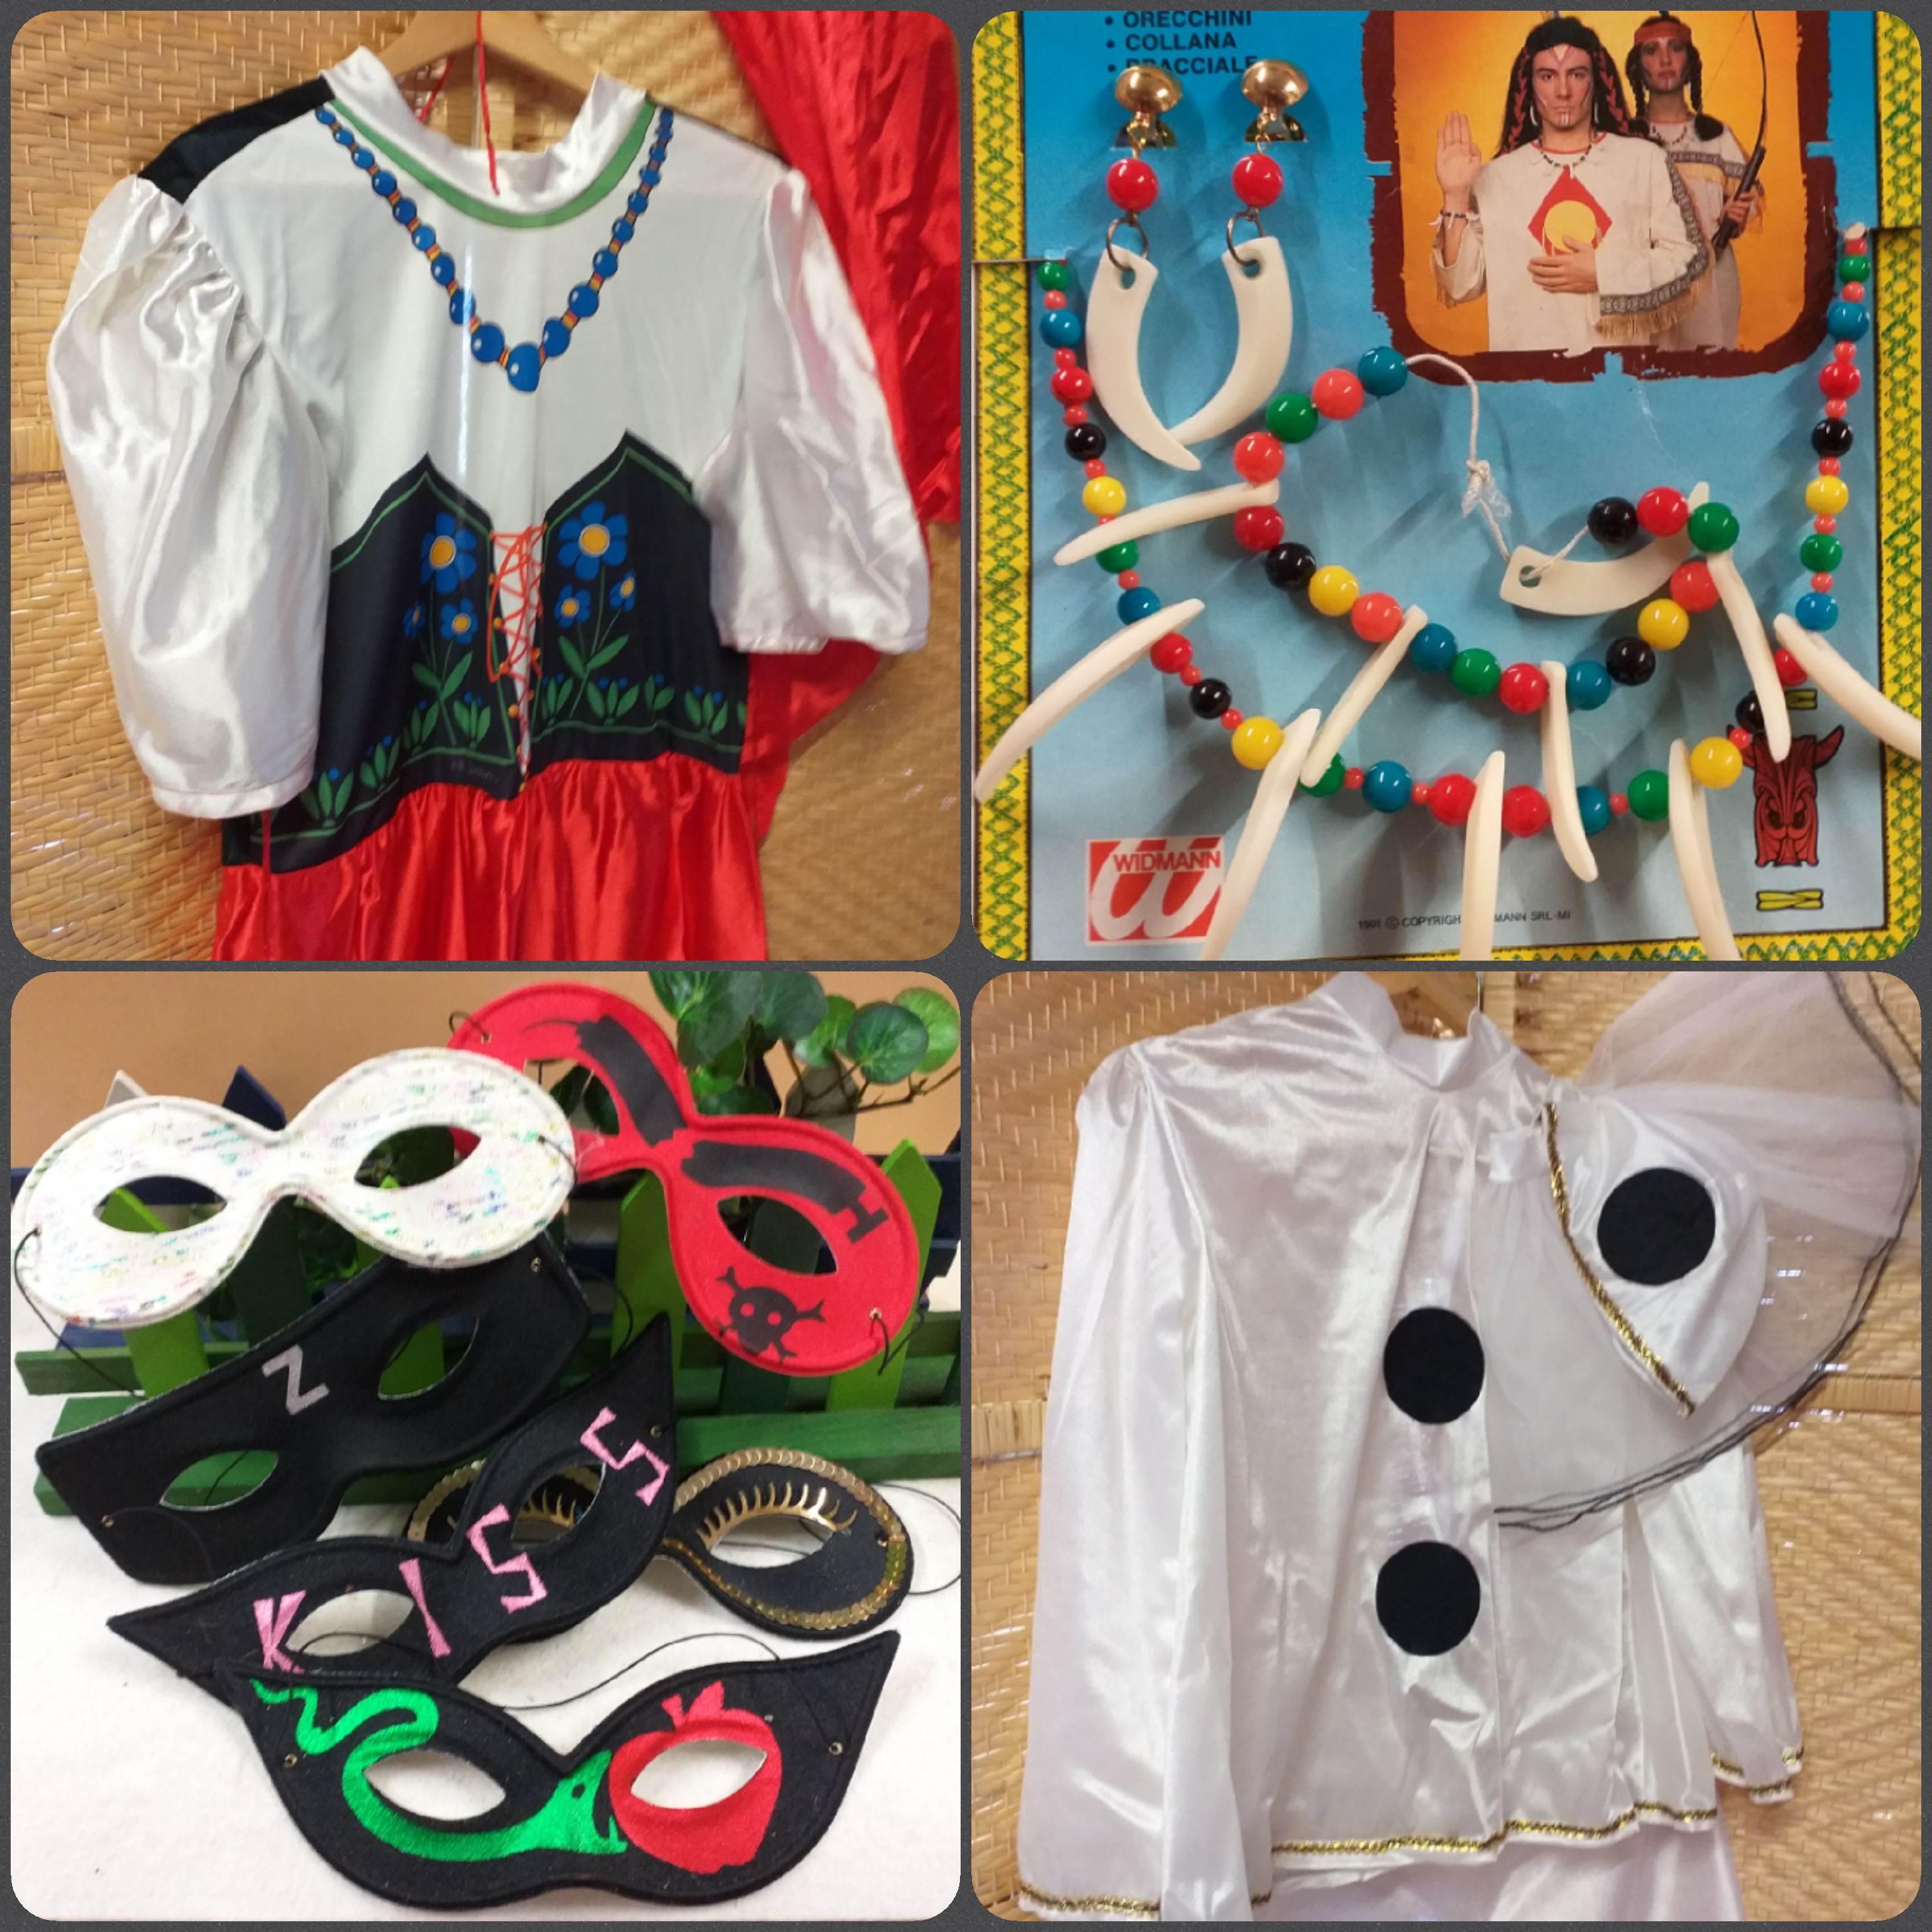 Accessori e costumi Carnevale fai da te maschere vestiti feste a tema –  Tagged polistirolo-forme-decorare – hobbyshopbomboniere